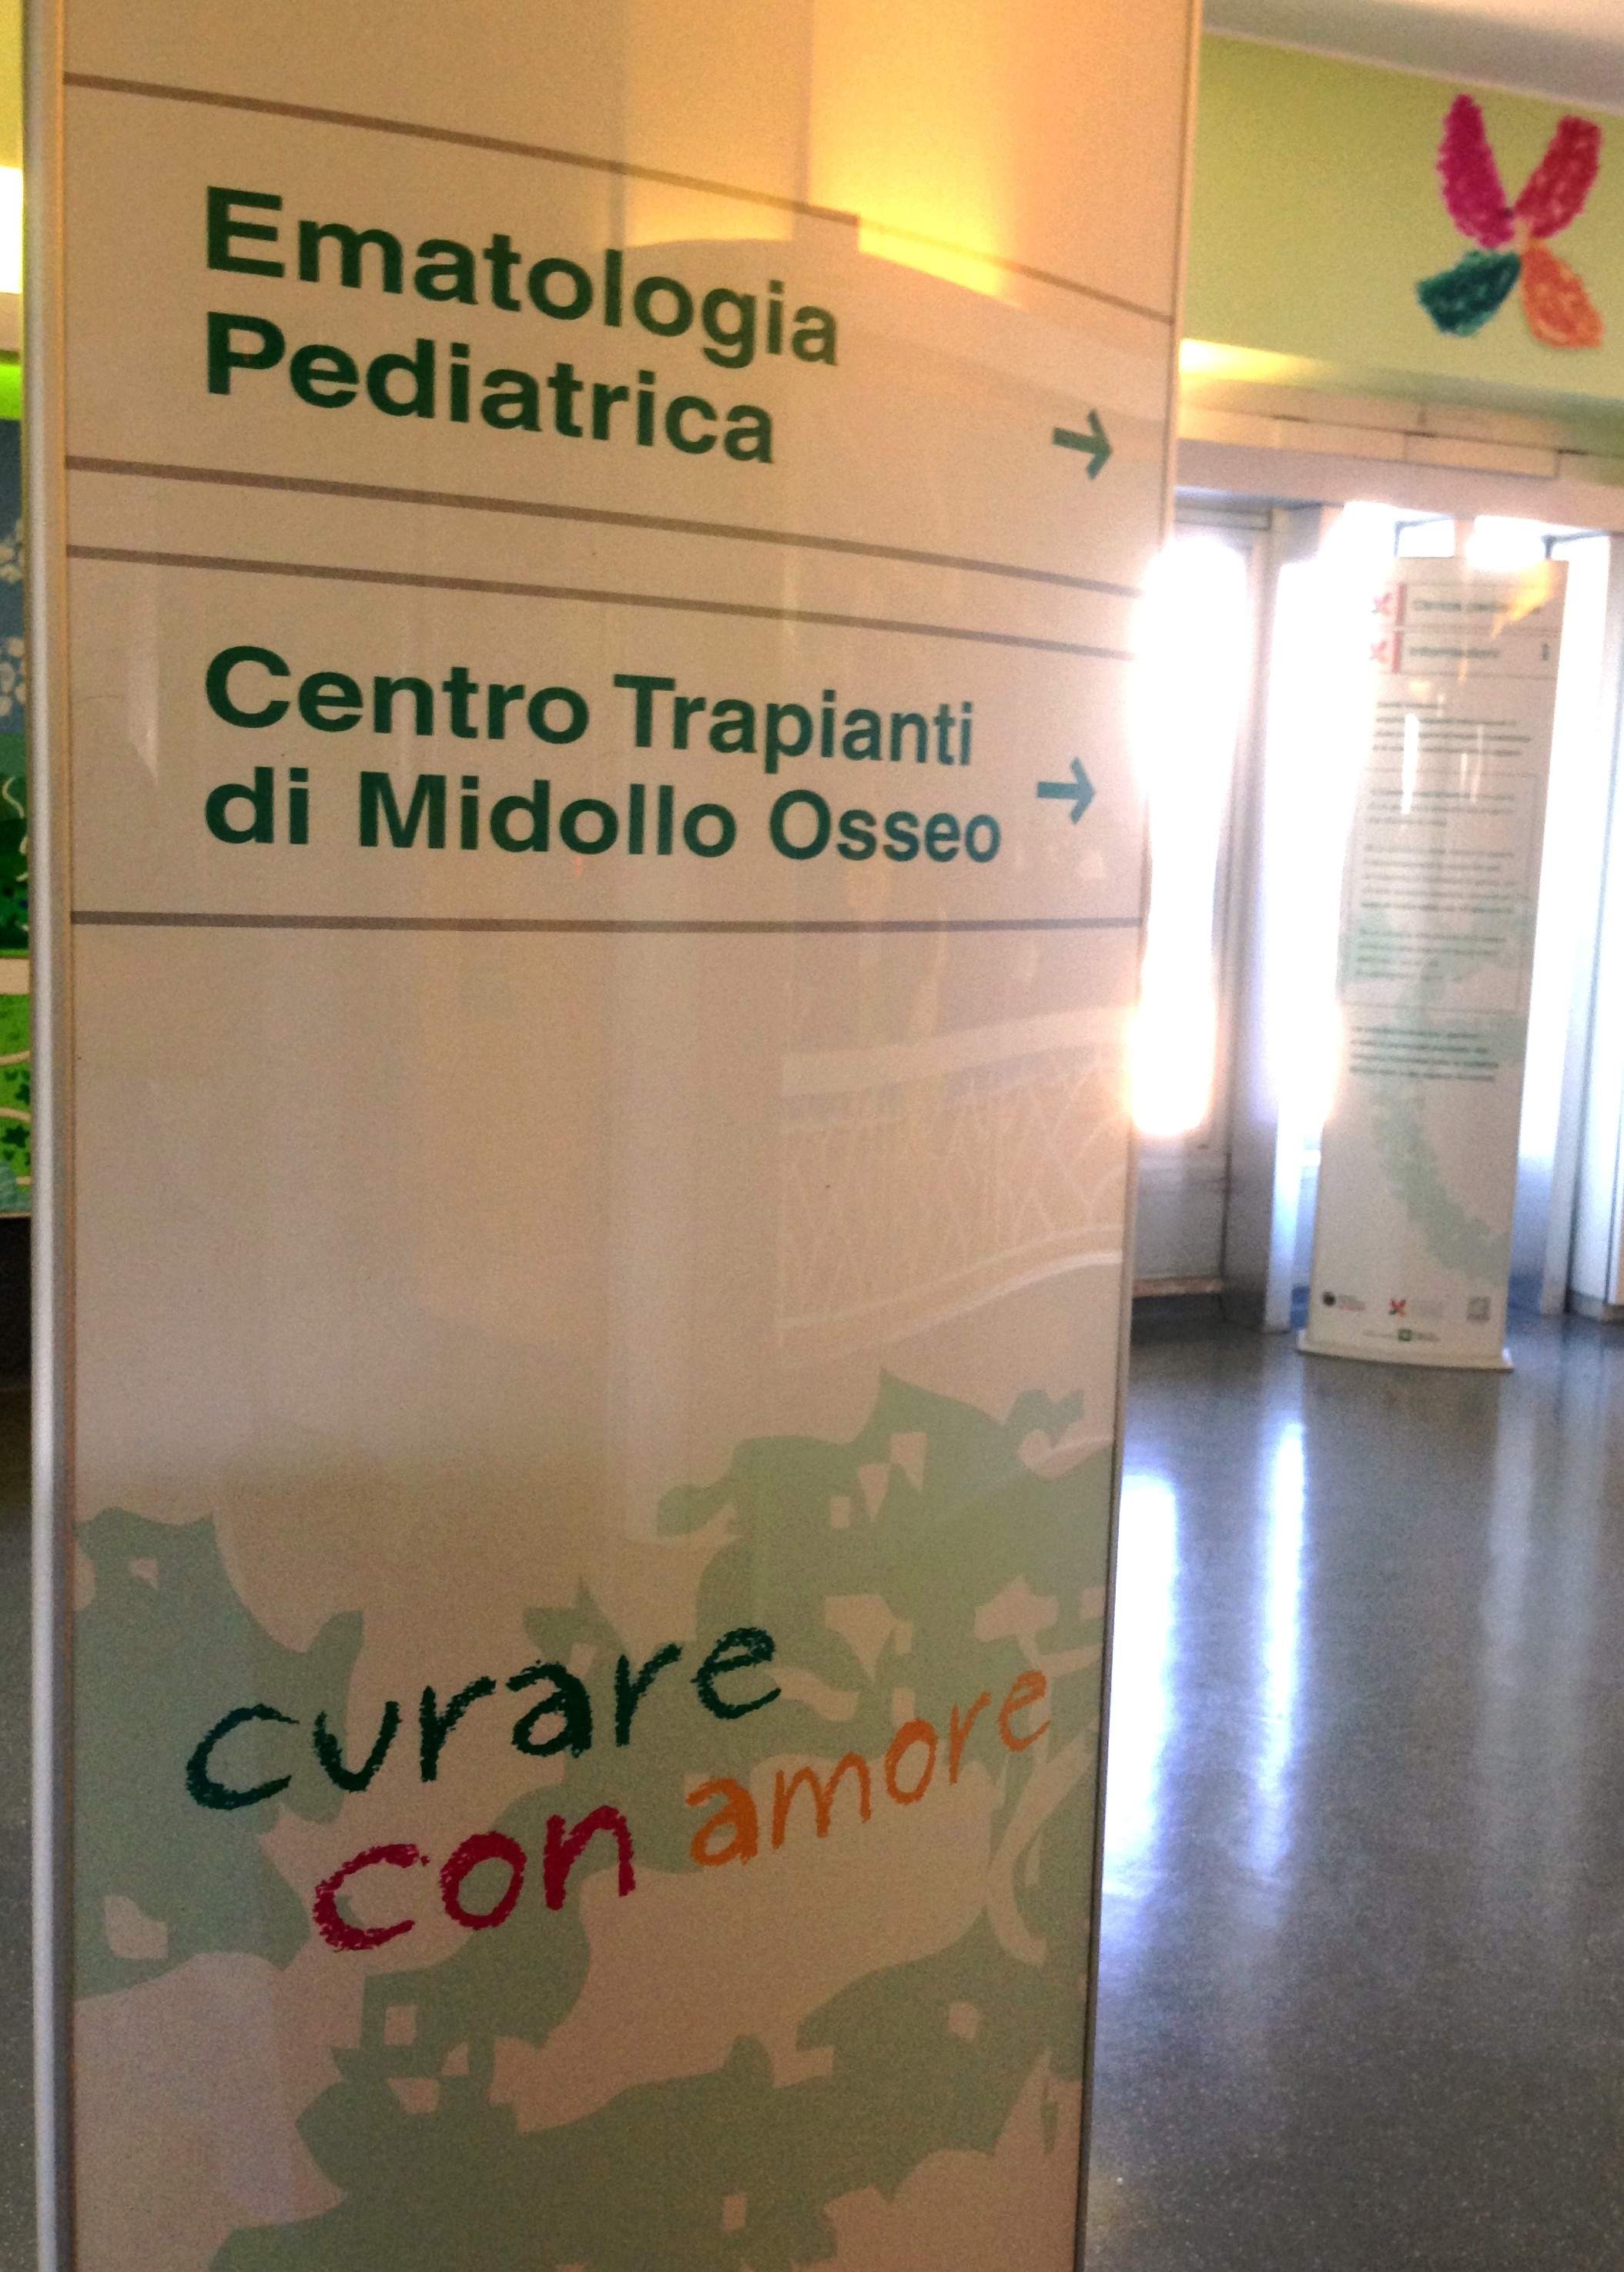 Onco-Ematologia Pediatrica di Monza. Curare con Amore